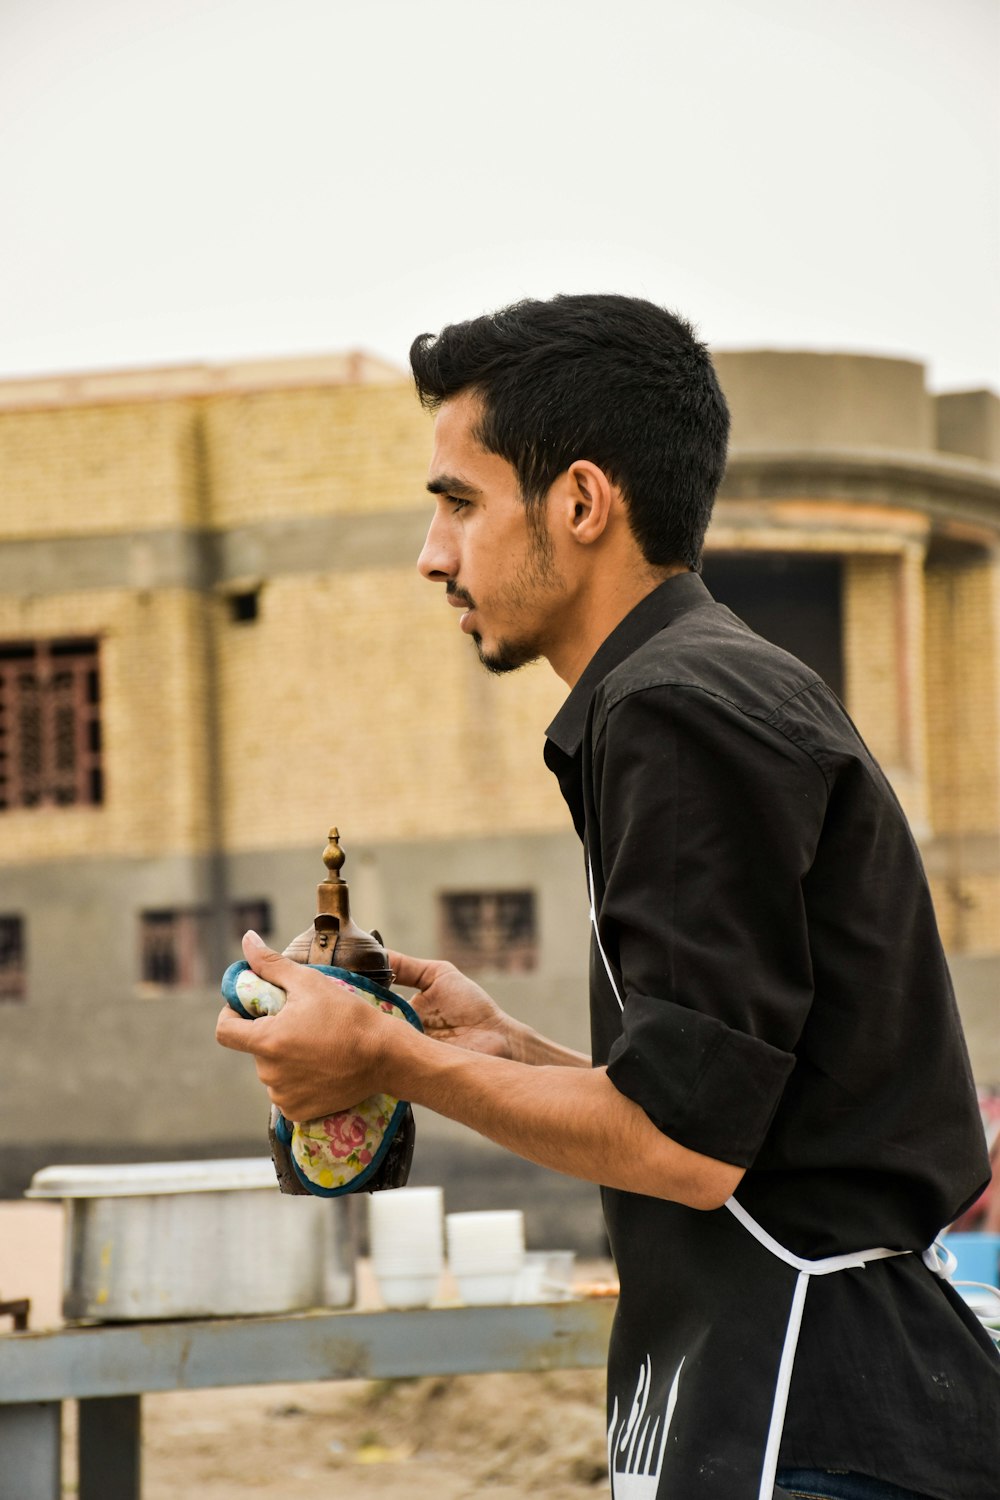 Mann mit schwarzem Hemd und Schürze steht und hält eine Flasche in der Hand